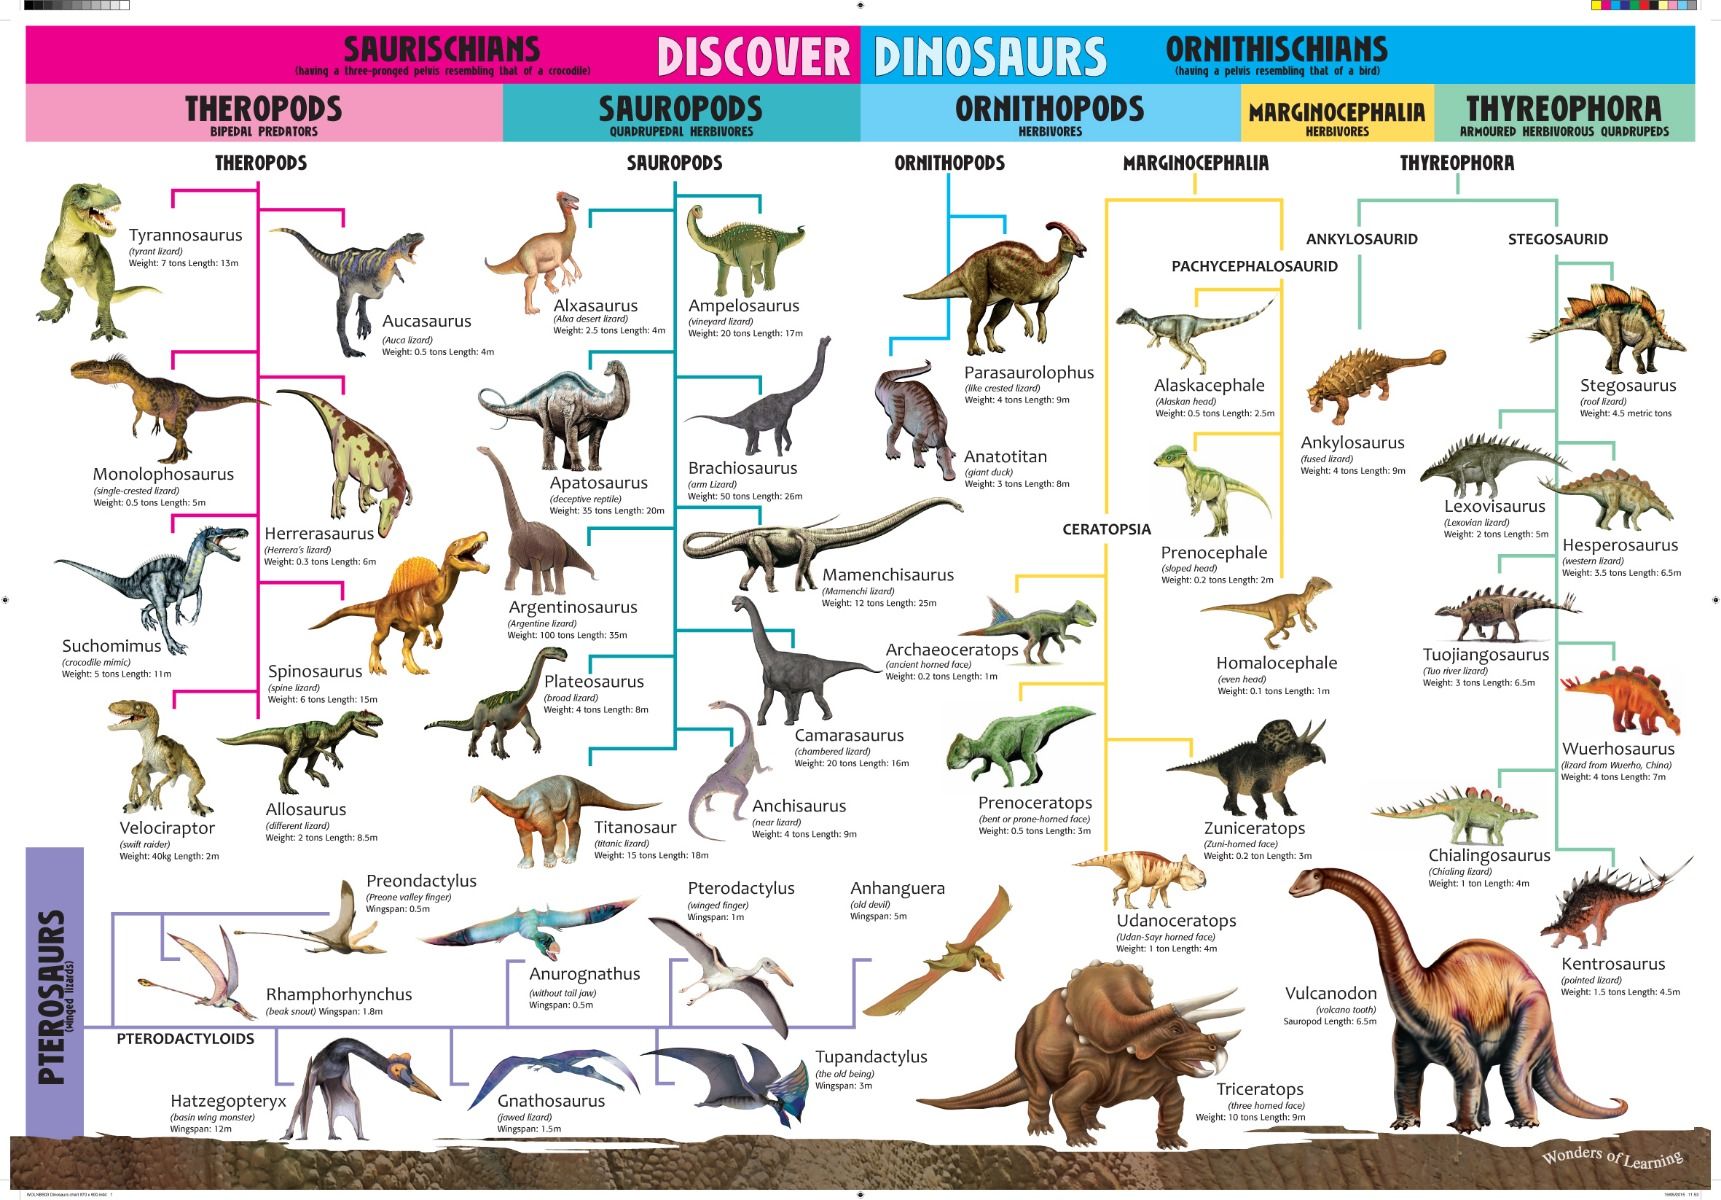 найти картинку где написано названия динозавра